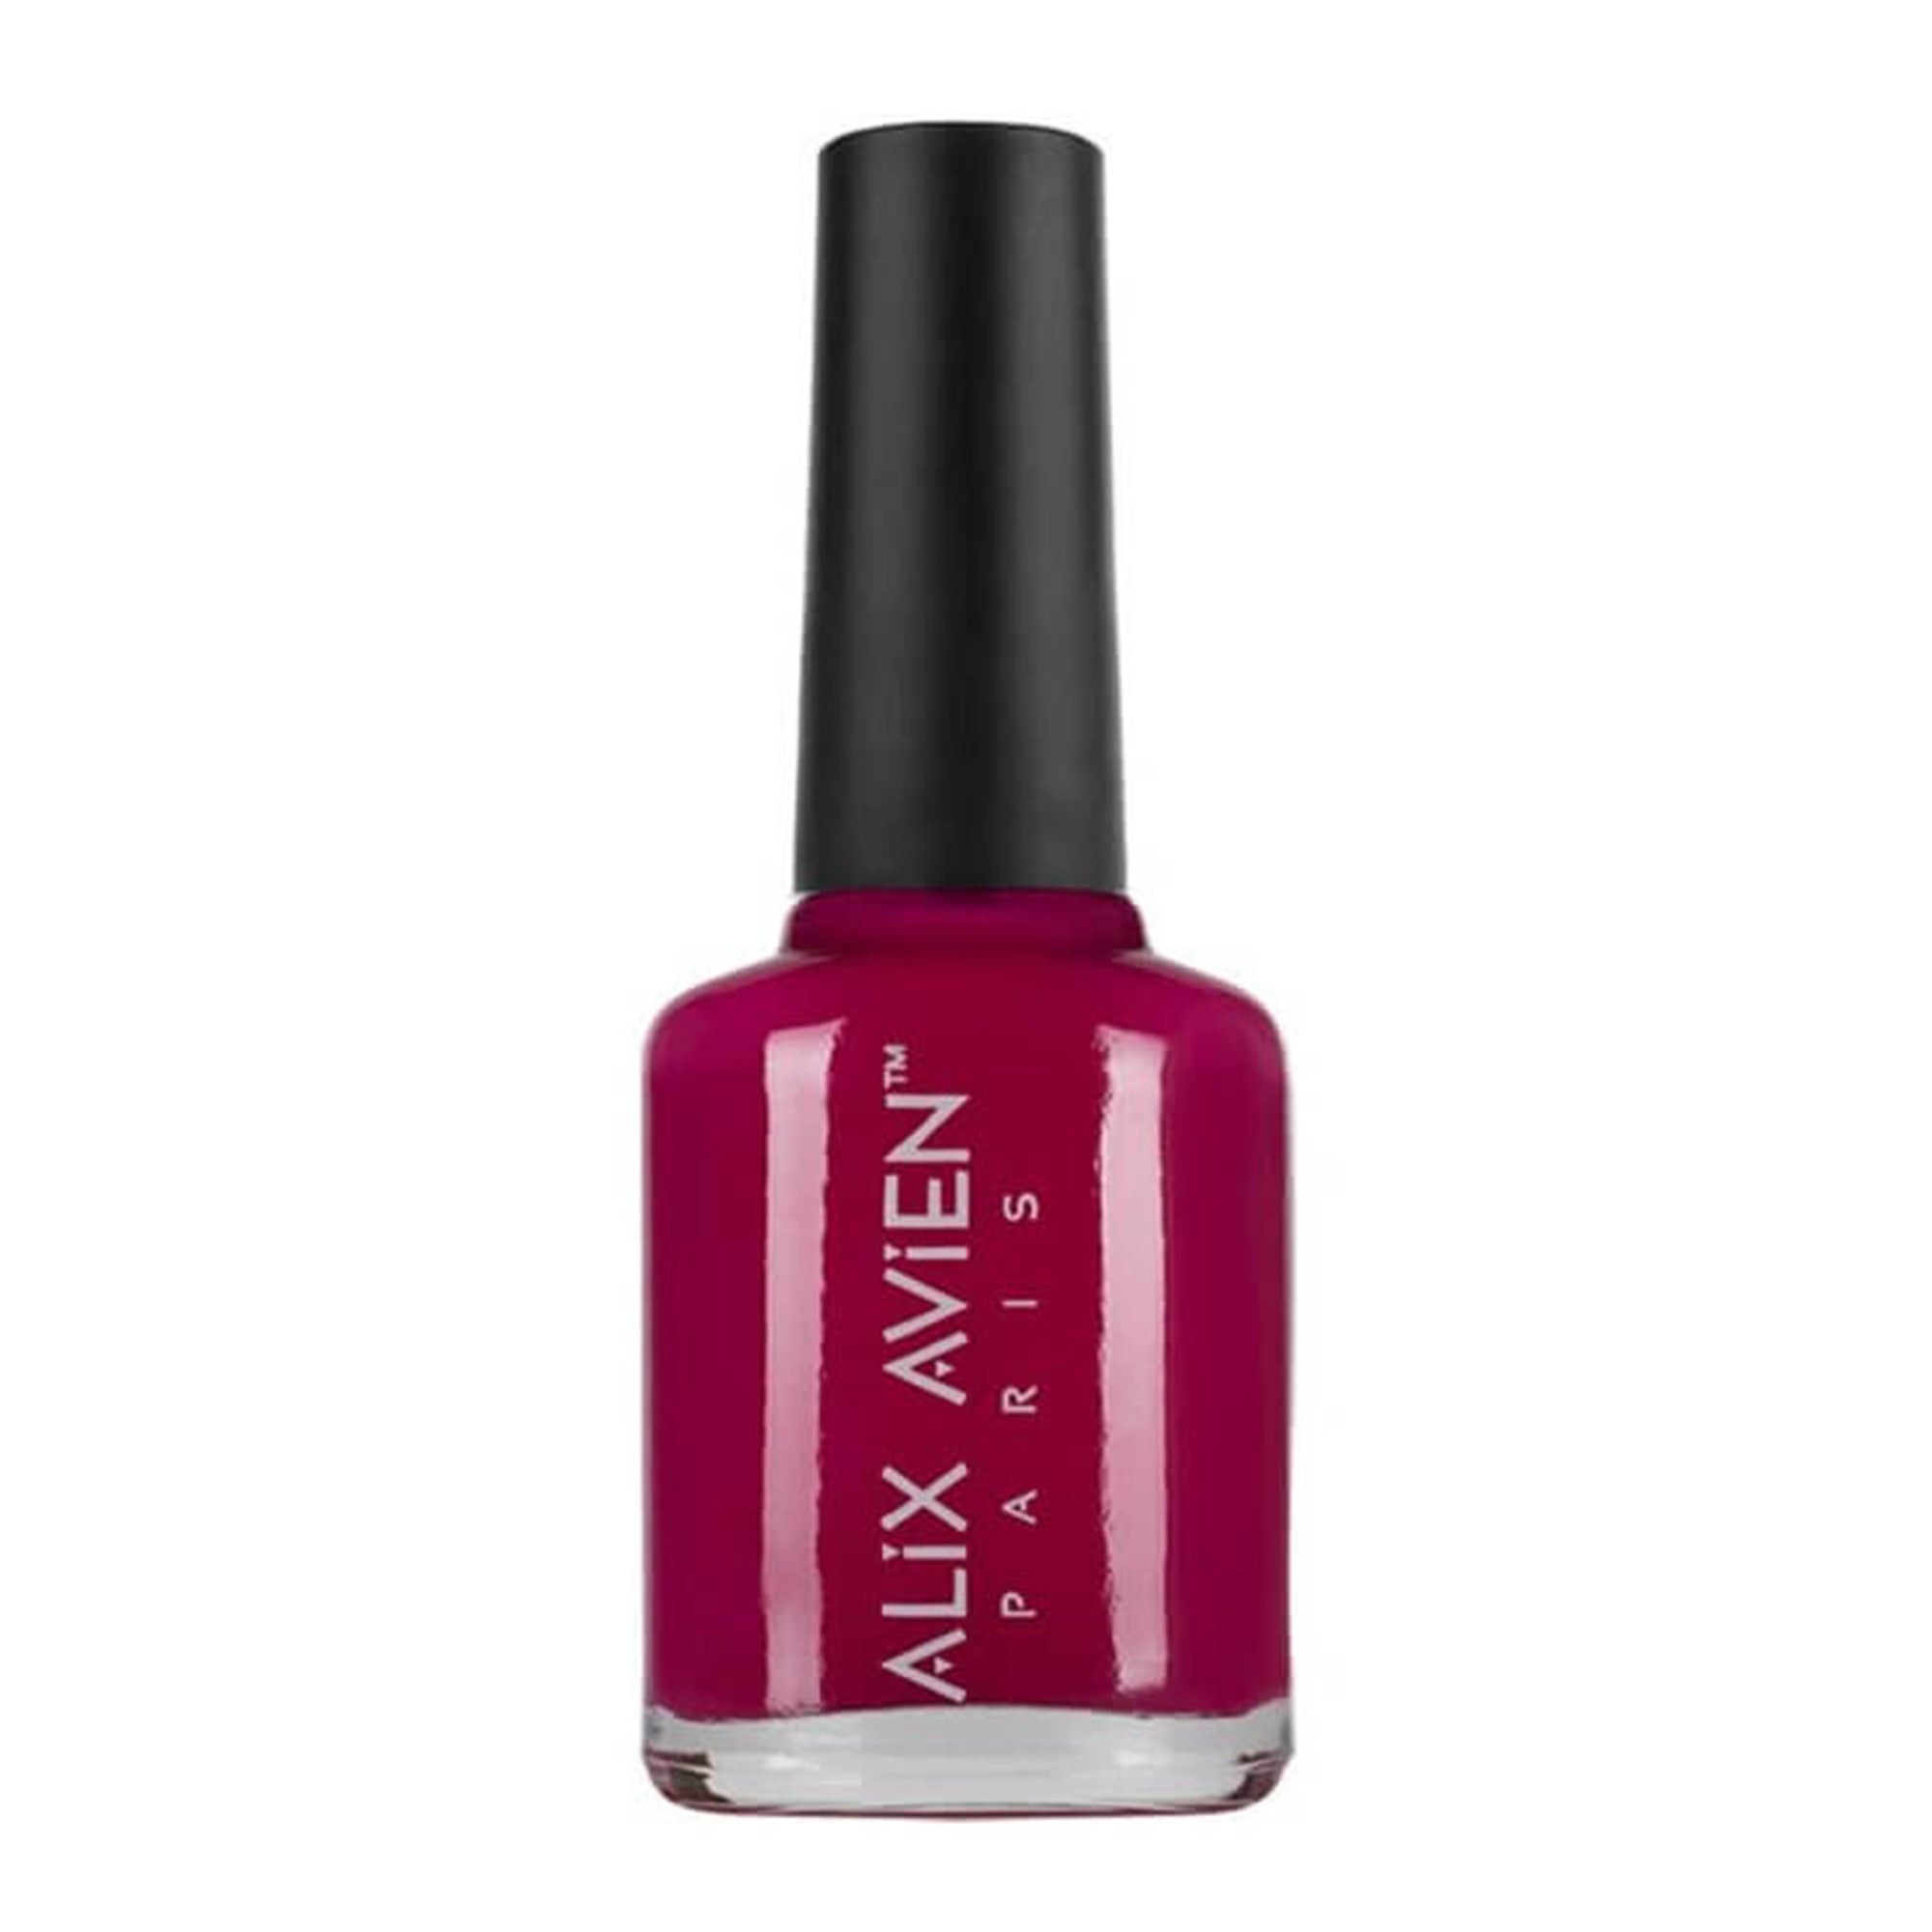 Alix Avien - Nail Polish No.18 (Hot Pink) - Eson Direct